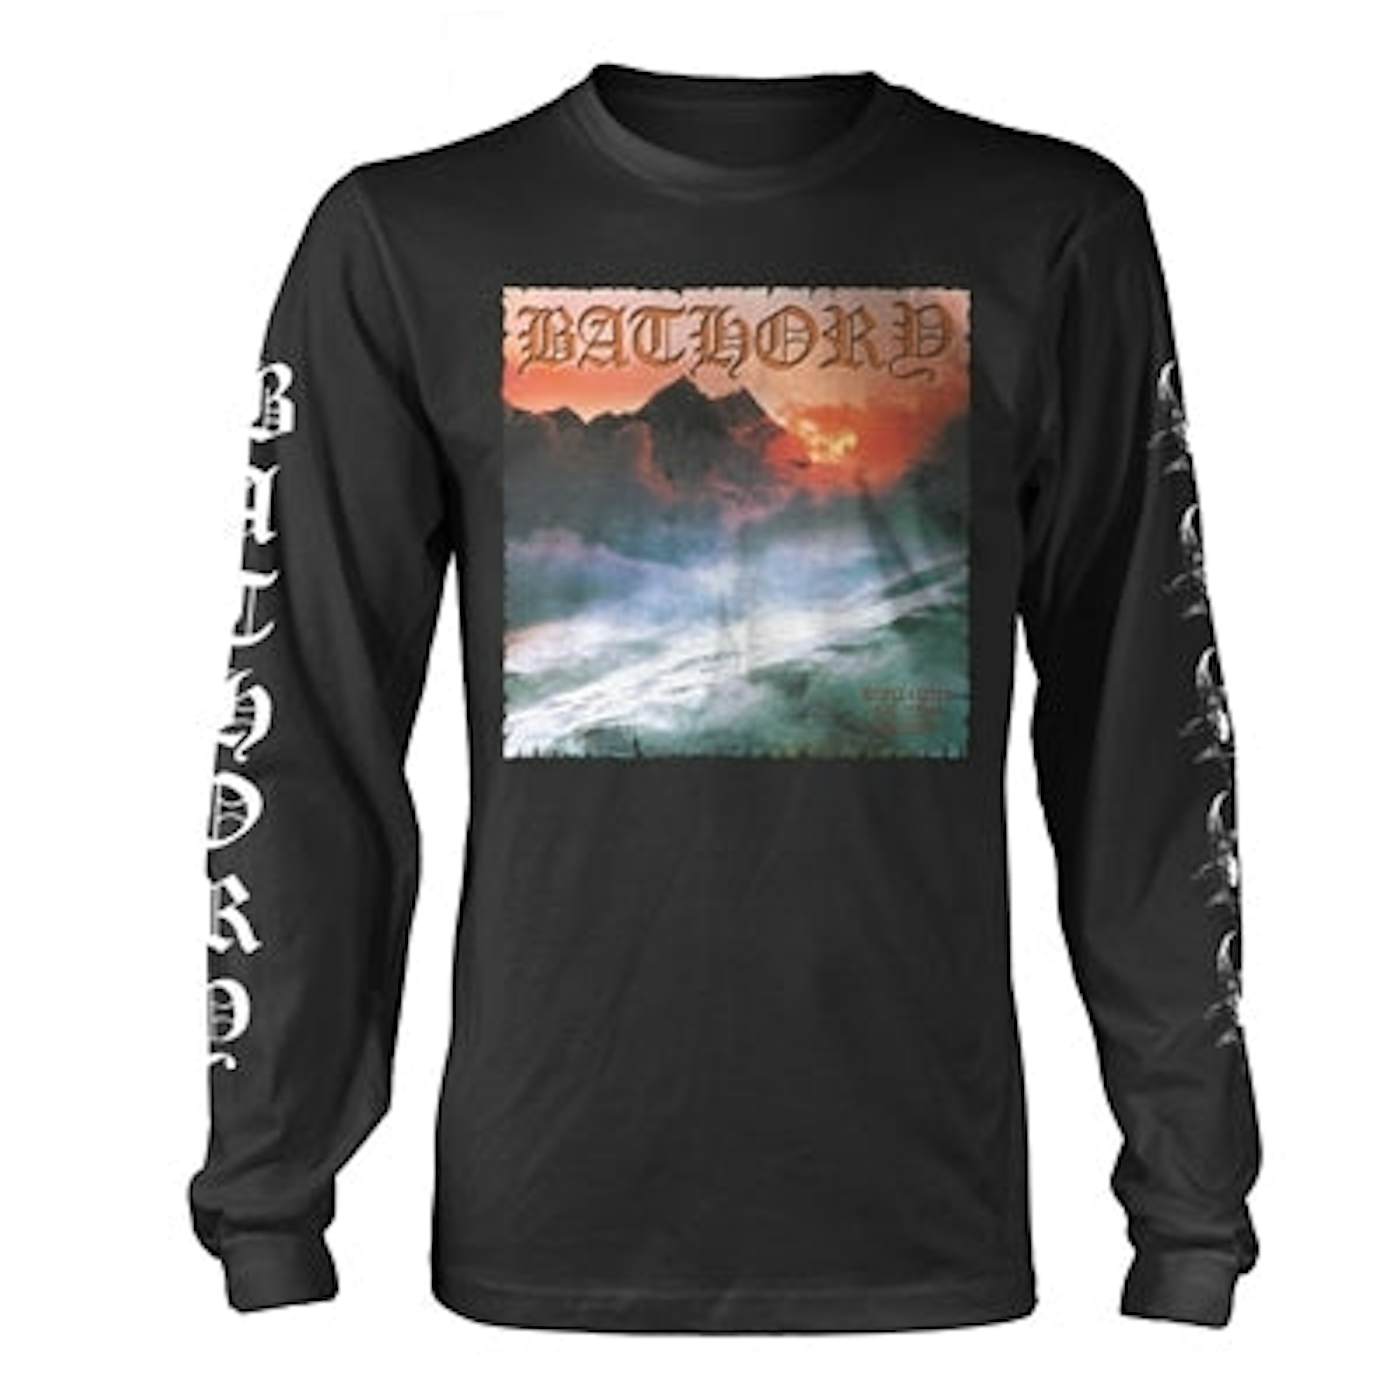 Bathory Long Sleeve T Shirt - Twilight Of The Gods